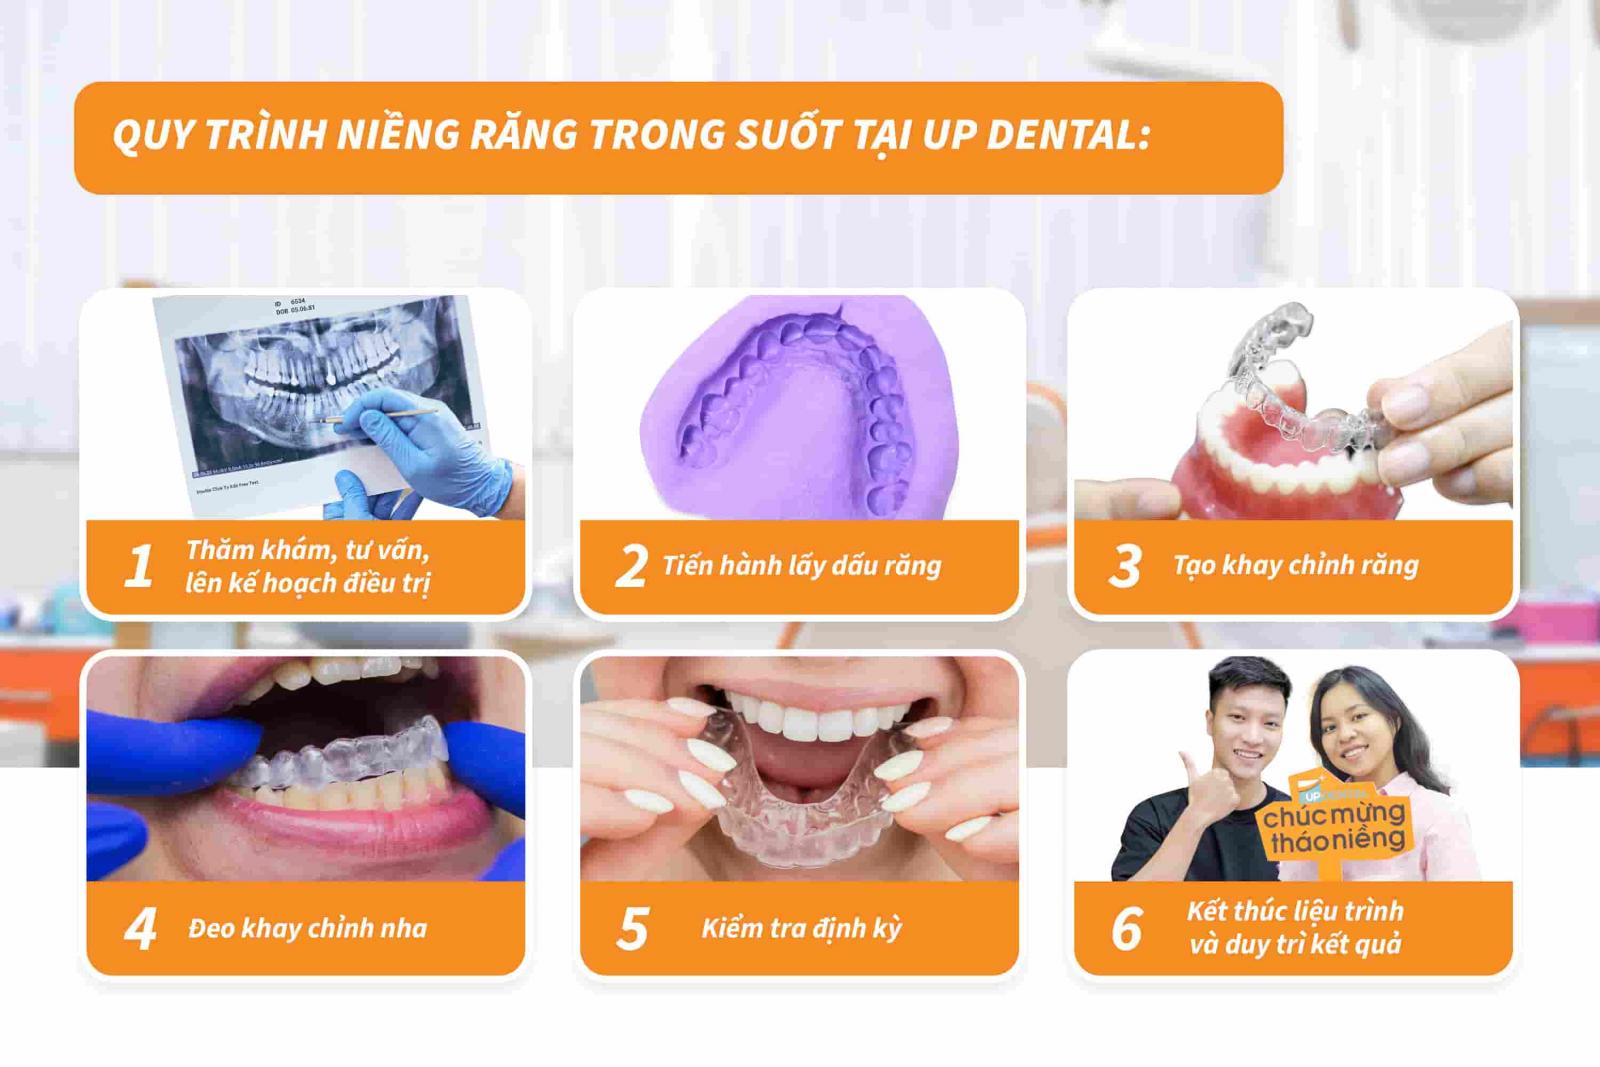 Quy trình niềng răng trong suốt tại Up Dental